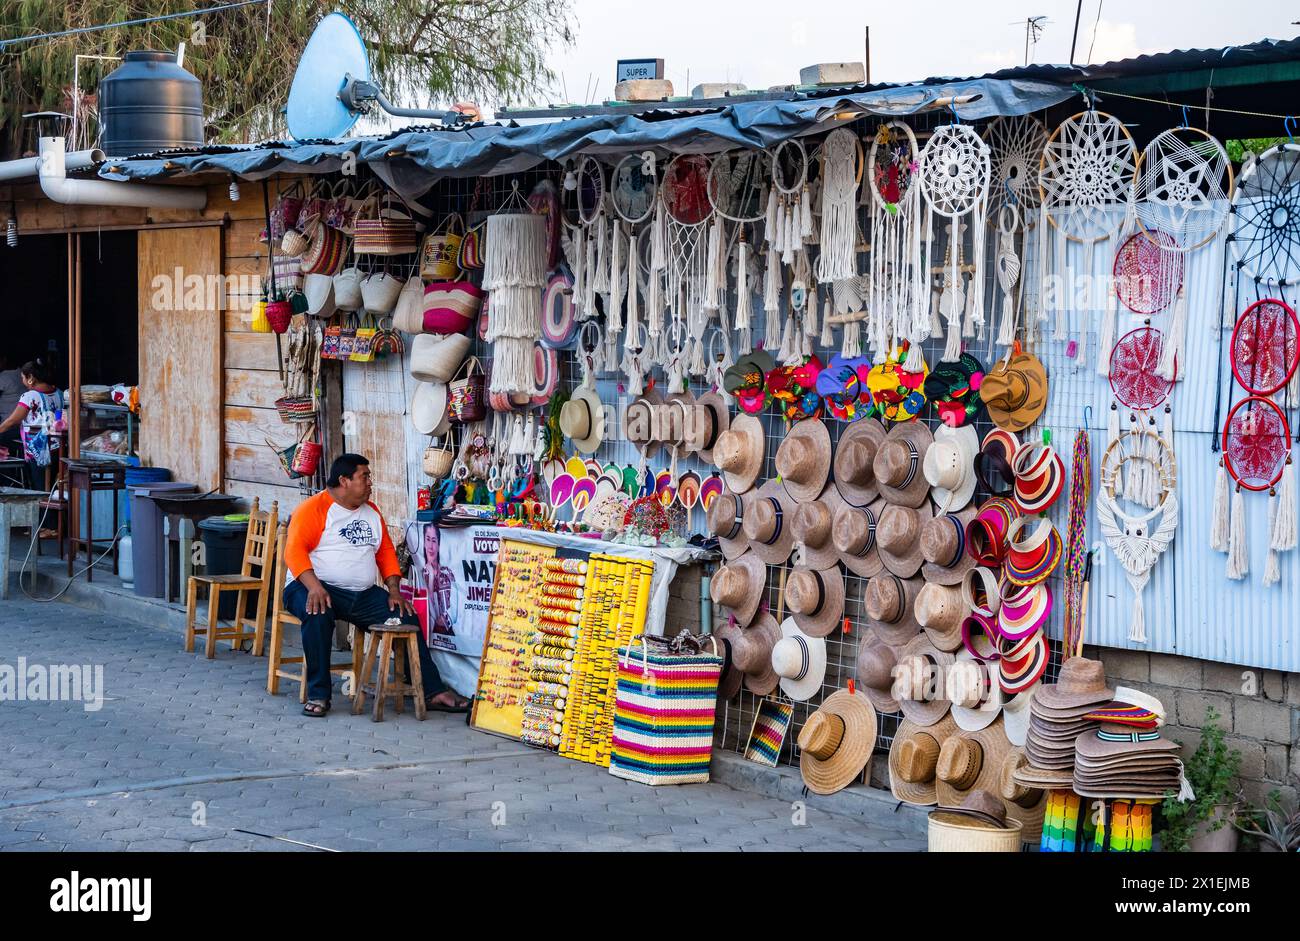 Un homme vendant des chapeaux et des sacs tissés, ainsi que d'autres produits locaux. Oaxaca, Mexique. Banque D'Images